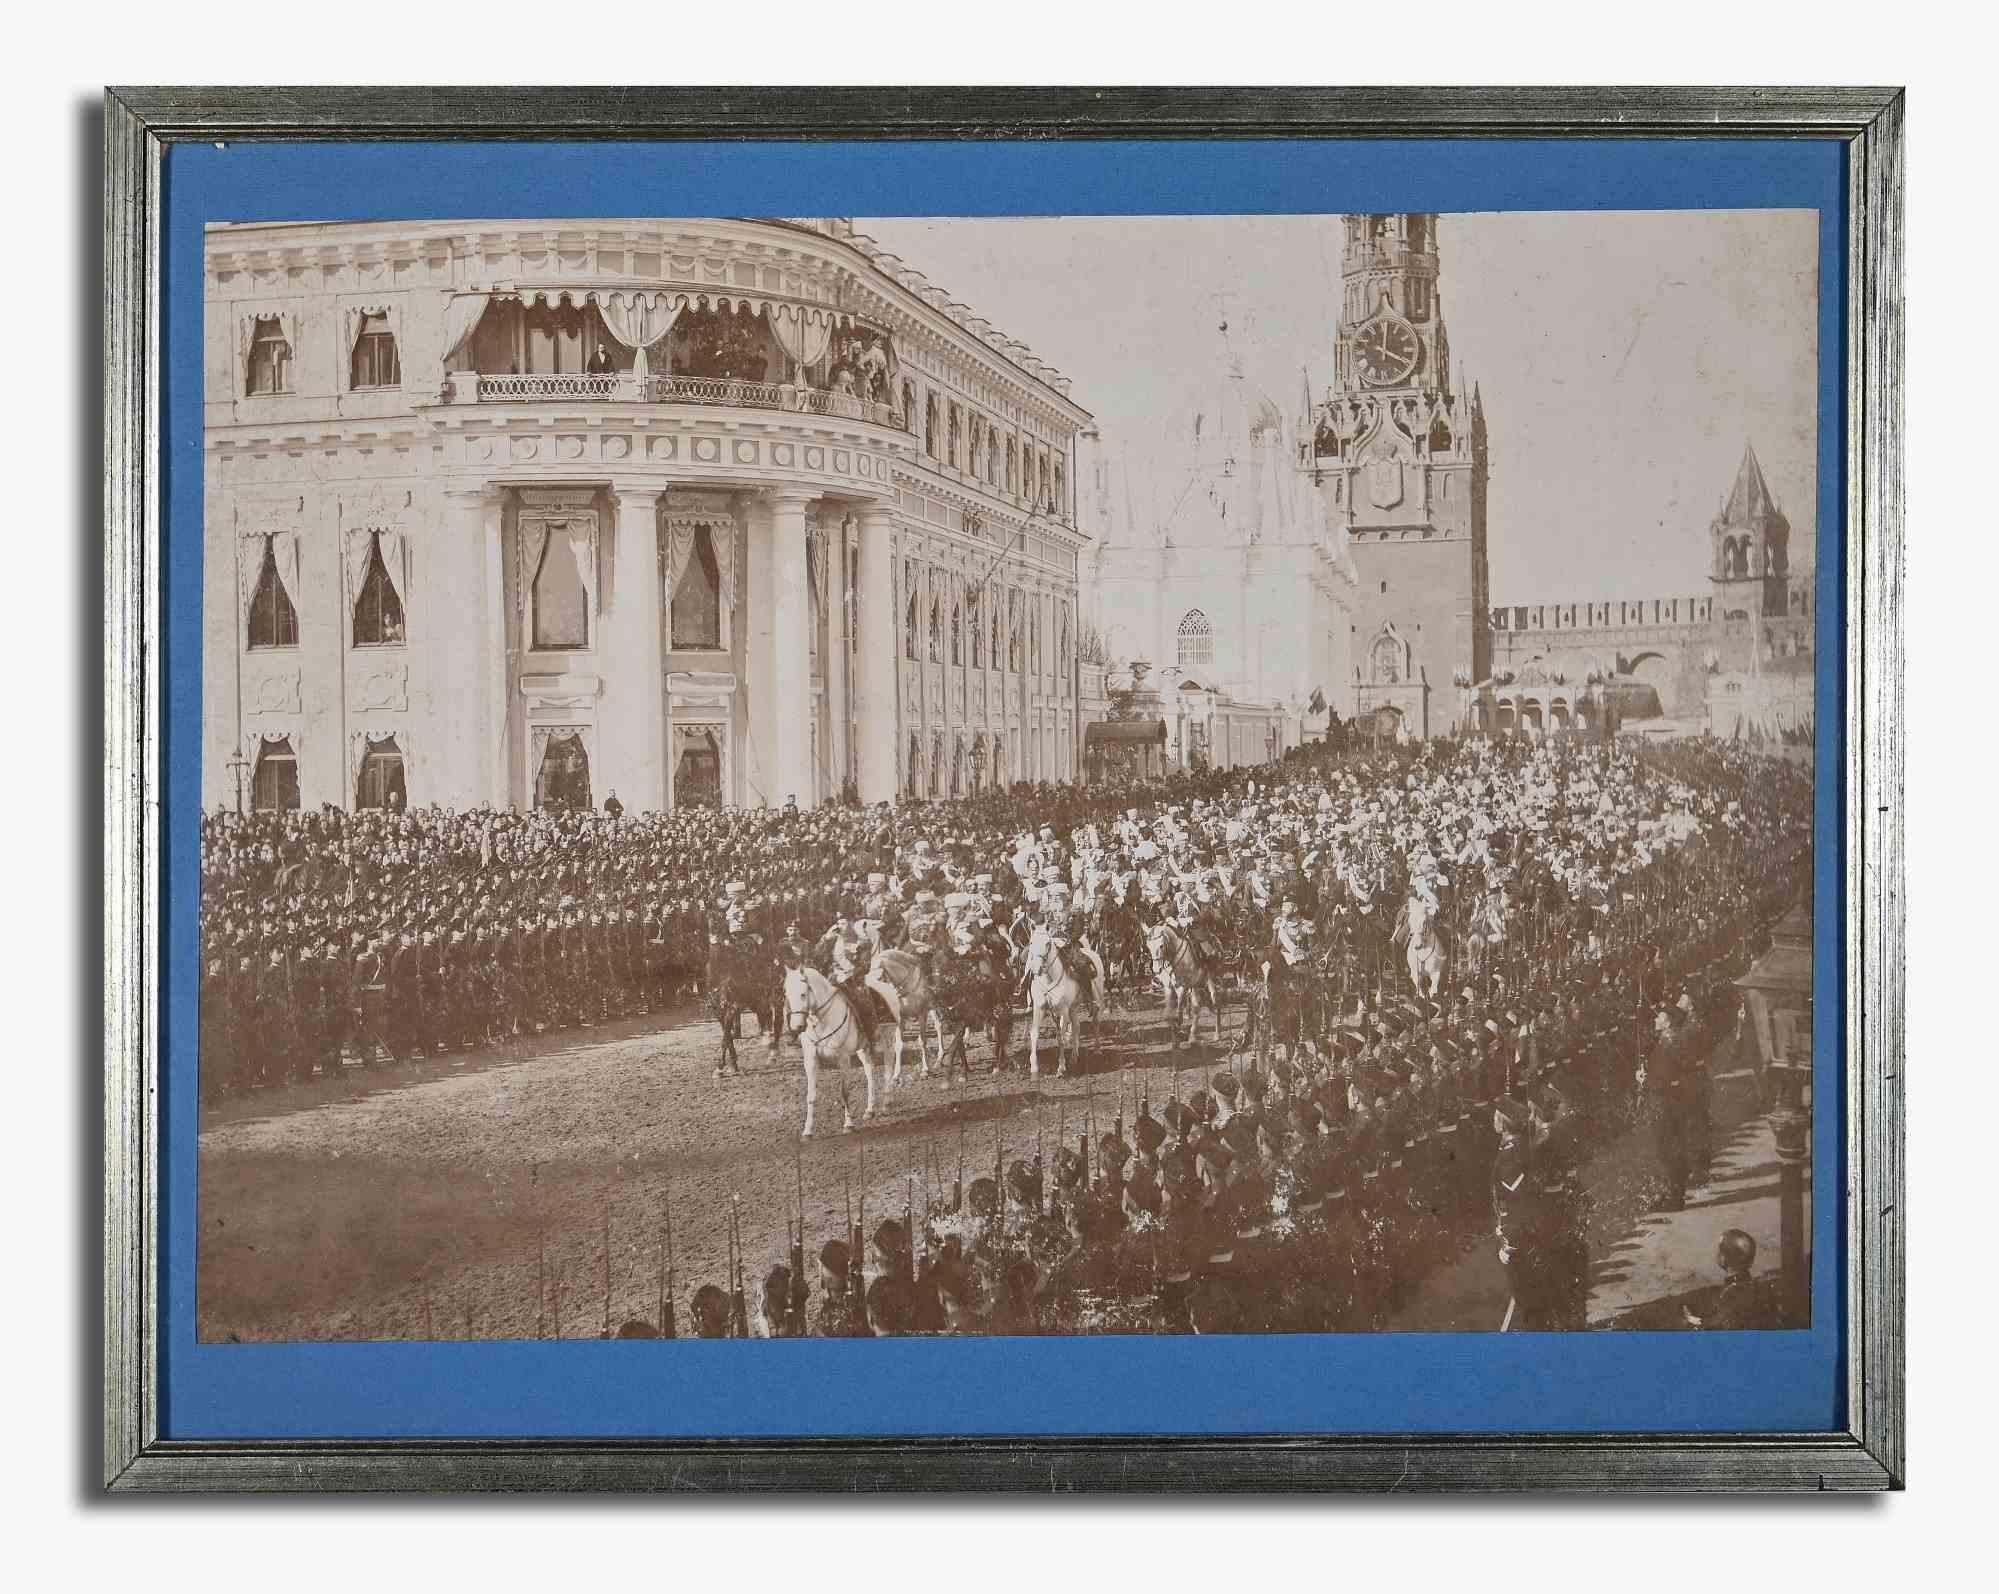 La parade de Moscou est une œuvre d'art moderne originale réalisée à la fin du XIXe siècle par Karl Bulla.

Photographie originale en noir et blanc.

L'œuvre d'art représente une parade à Moscou.

Comprend un cadre (état moyen) : 36,5 x 46,5 cm

